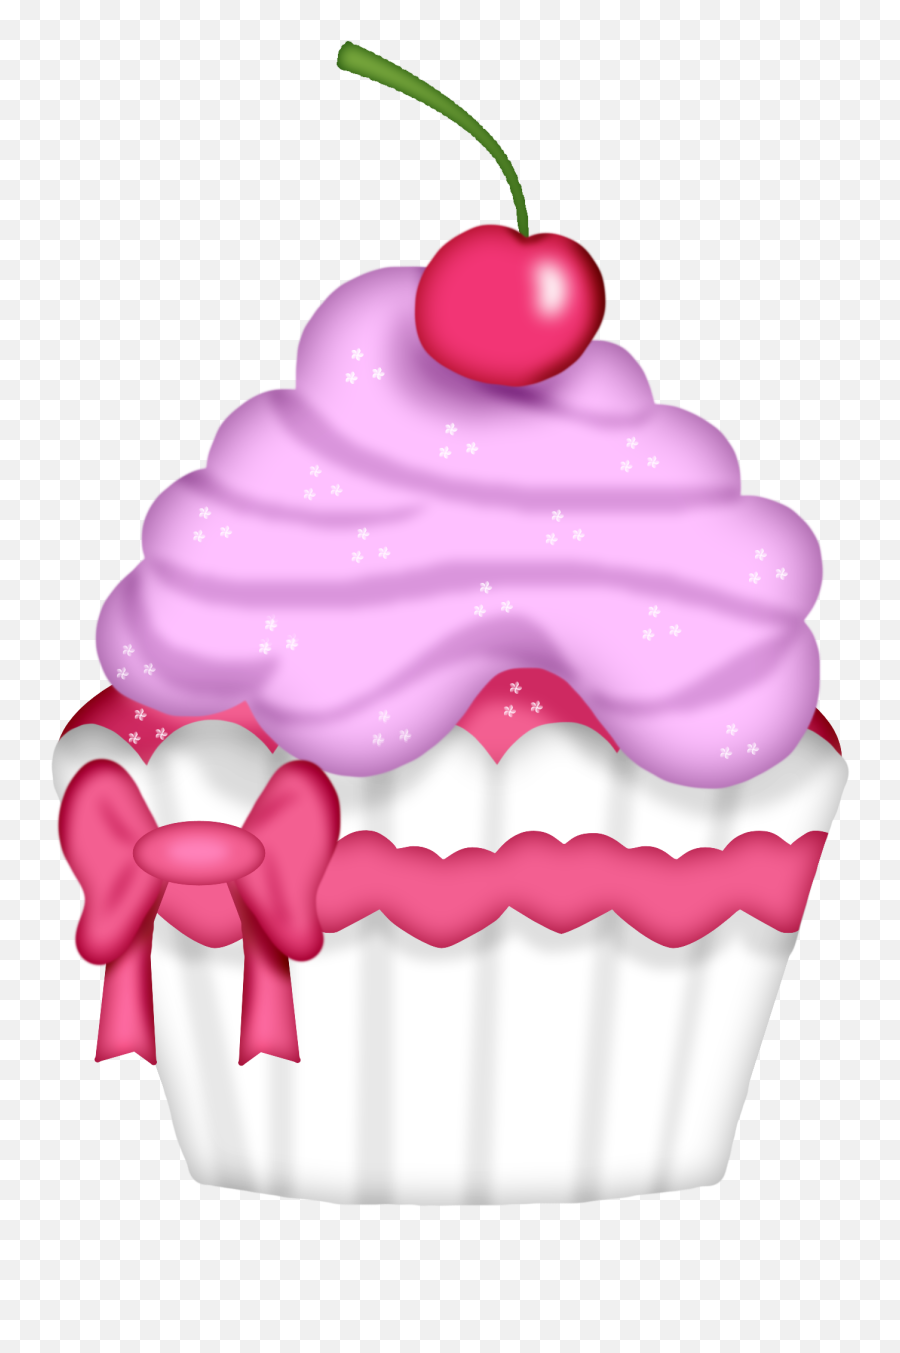 Cupcake Clipart Easy - Cupcake And Desserts Clipart Emoji,Emoji Cupcake Ideas